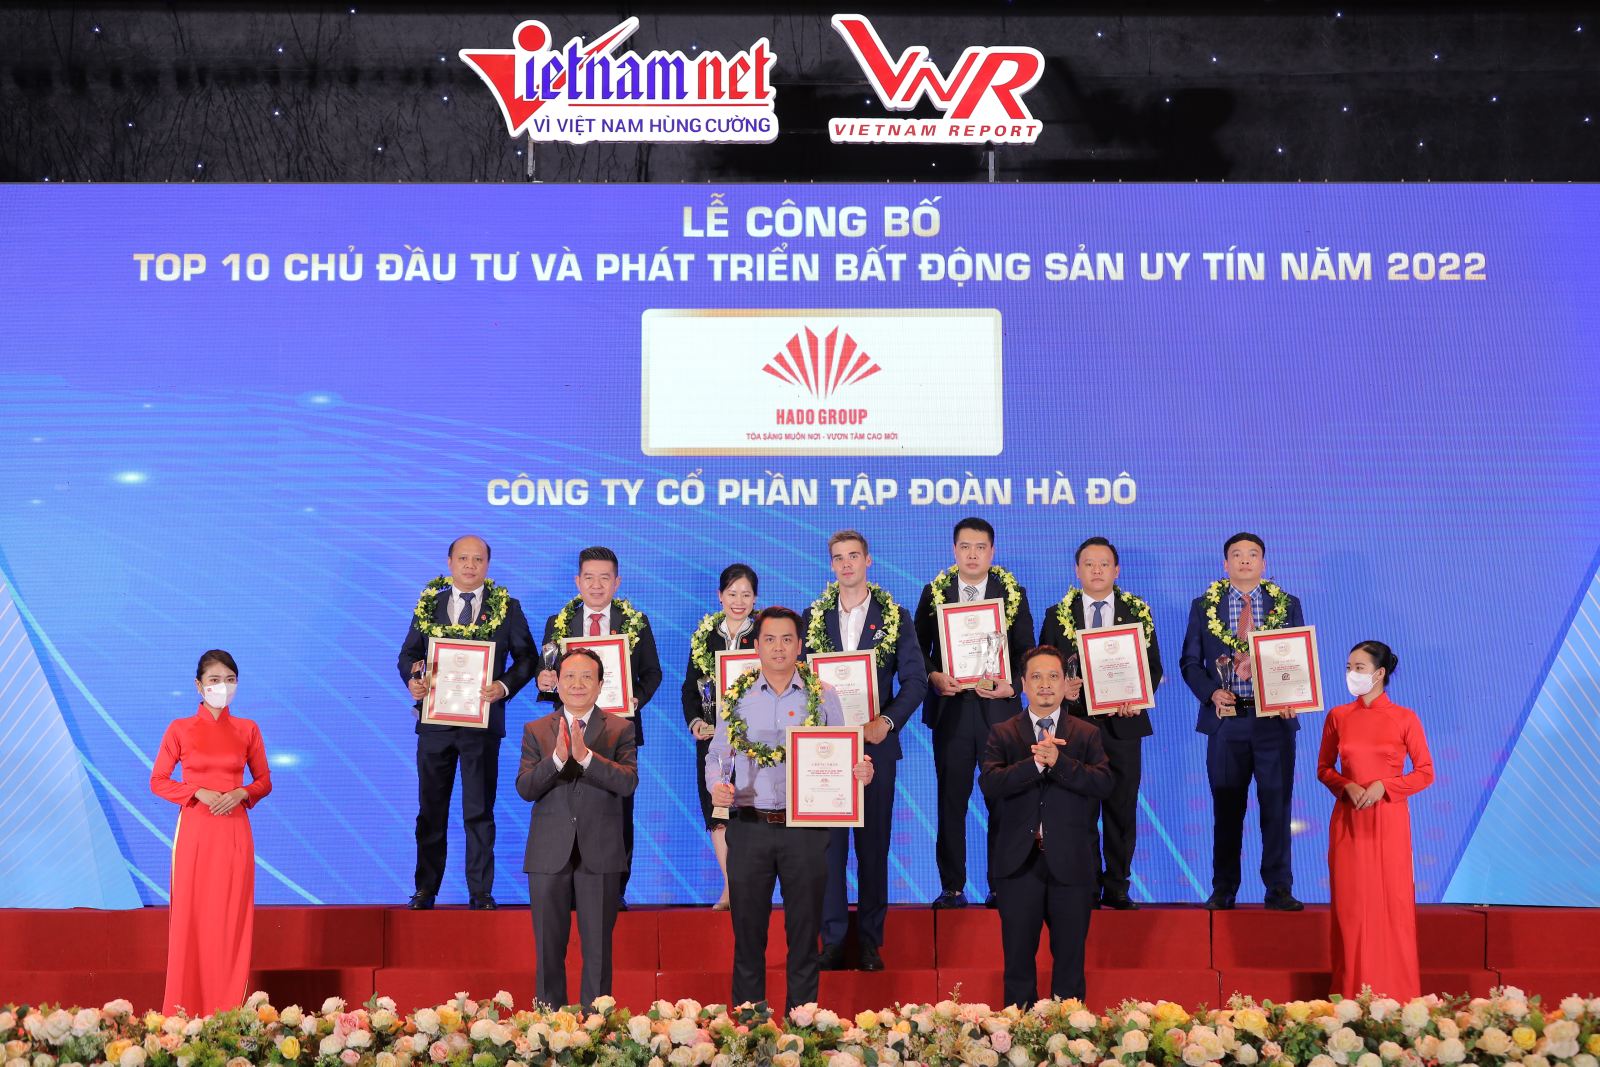 Tập đoàn Hà Đô tiếp tục nằm trong TOP 10 Chủ đầu tư BĐS uy tín Việt Nam năm 2022